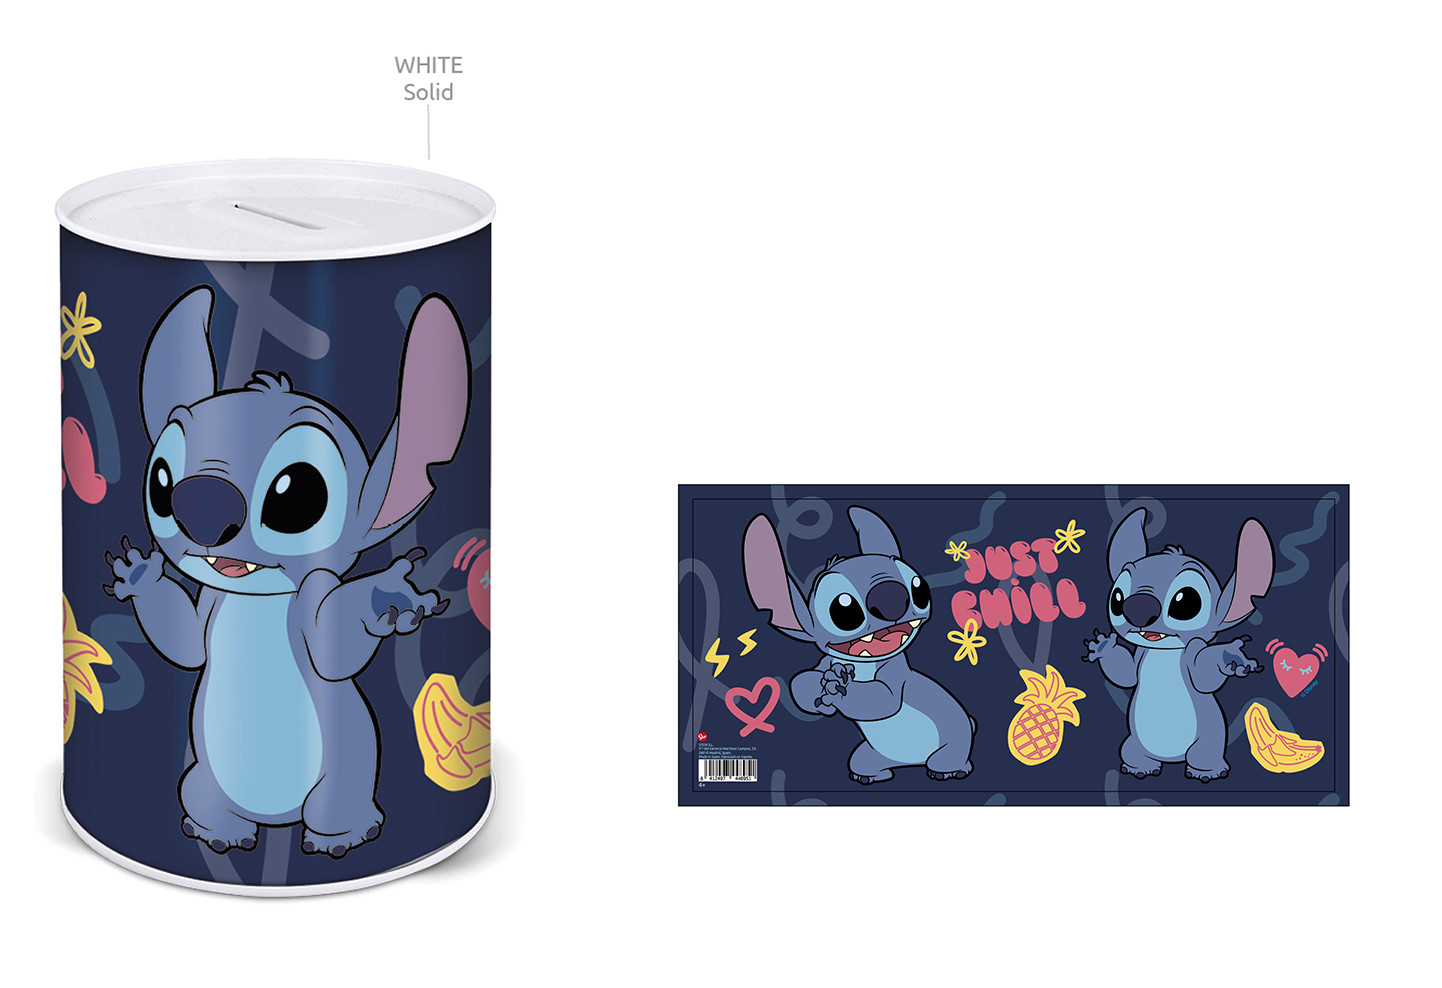 Ropa y accesorios para el cole inspirados en Lilo y Stitch de Disney